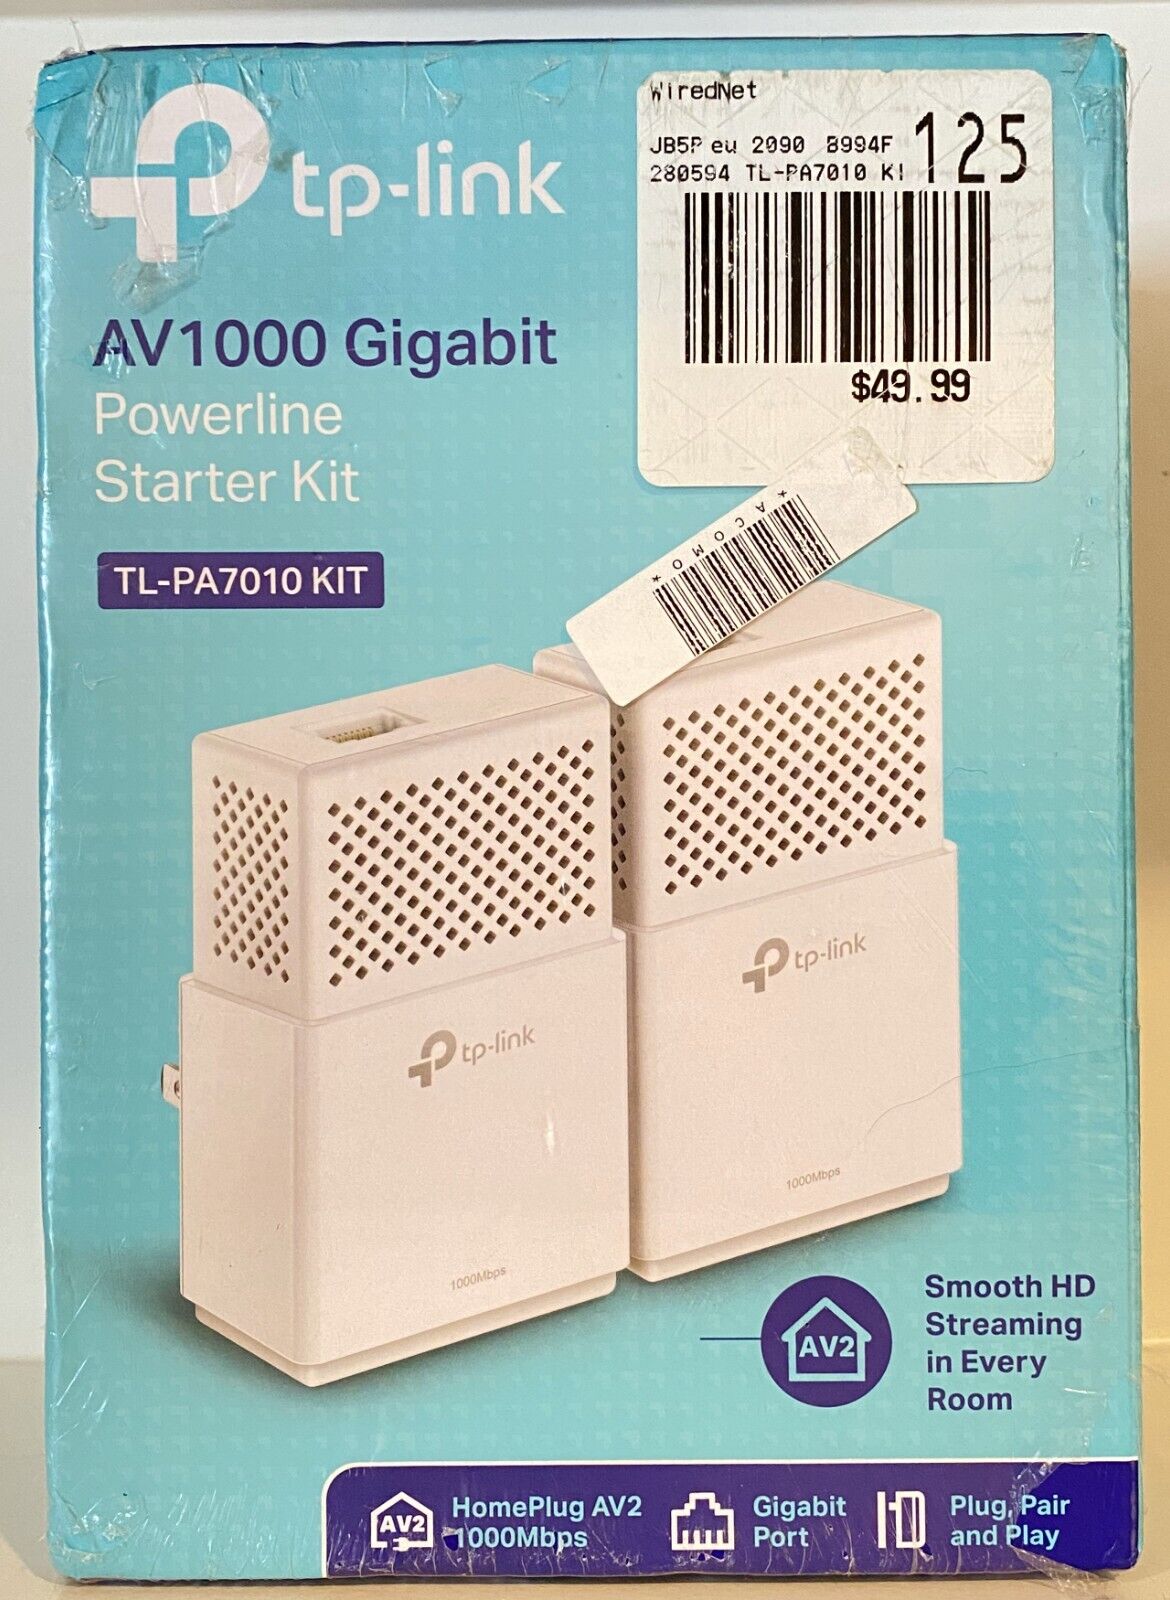 TP-LINK Gigabit Powerline Starter Kit (TL-PA7010 KIT) - New - Sealed